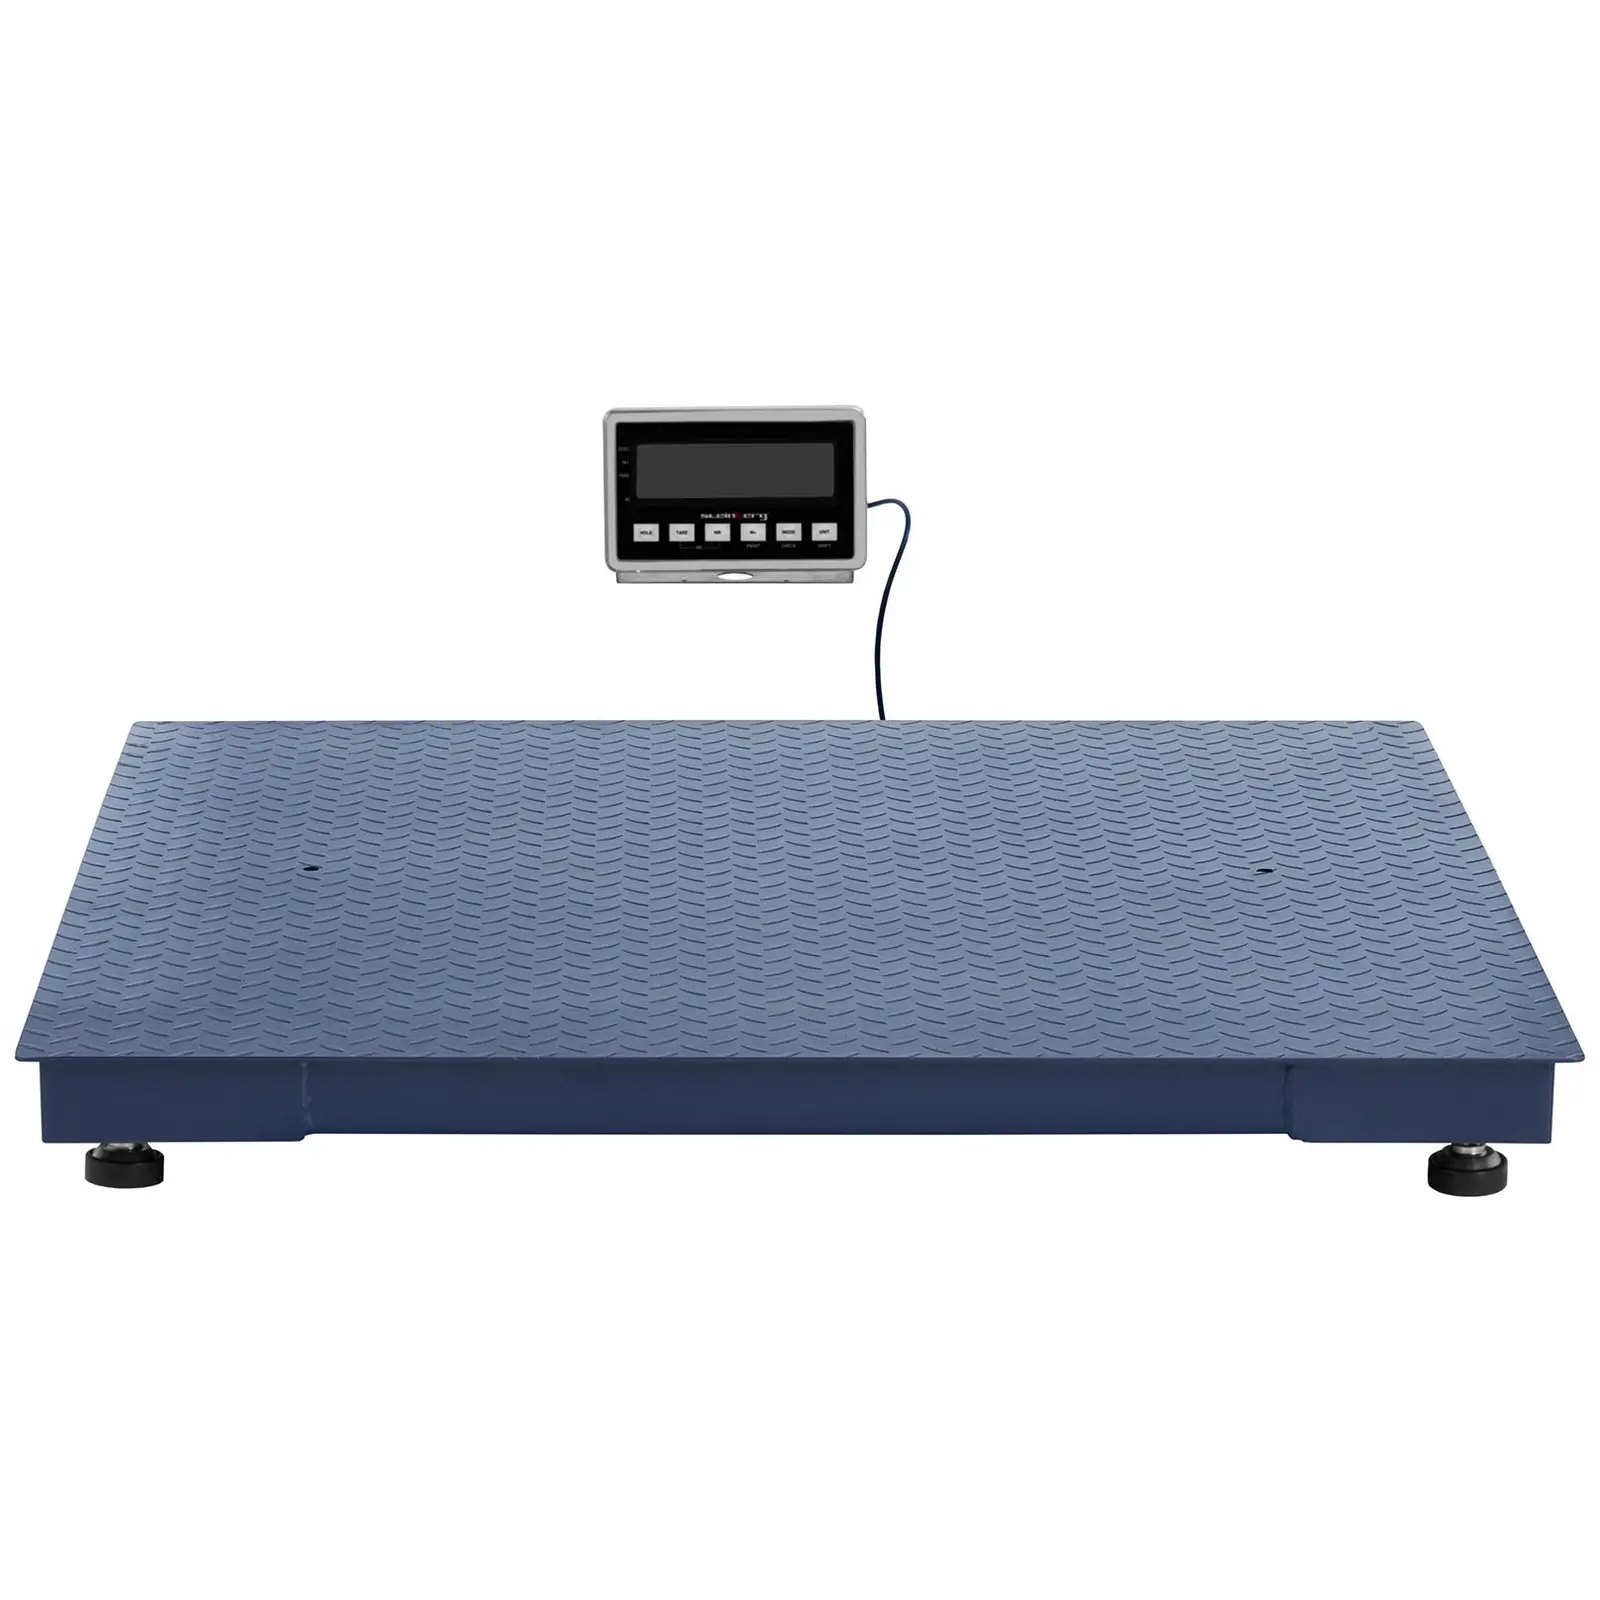 Floor scale - 3000 kg / 1 kg - 1200 x 1200 mm - LCD